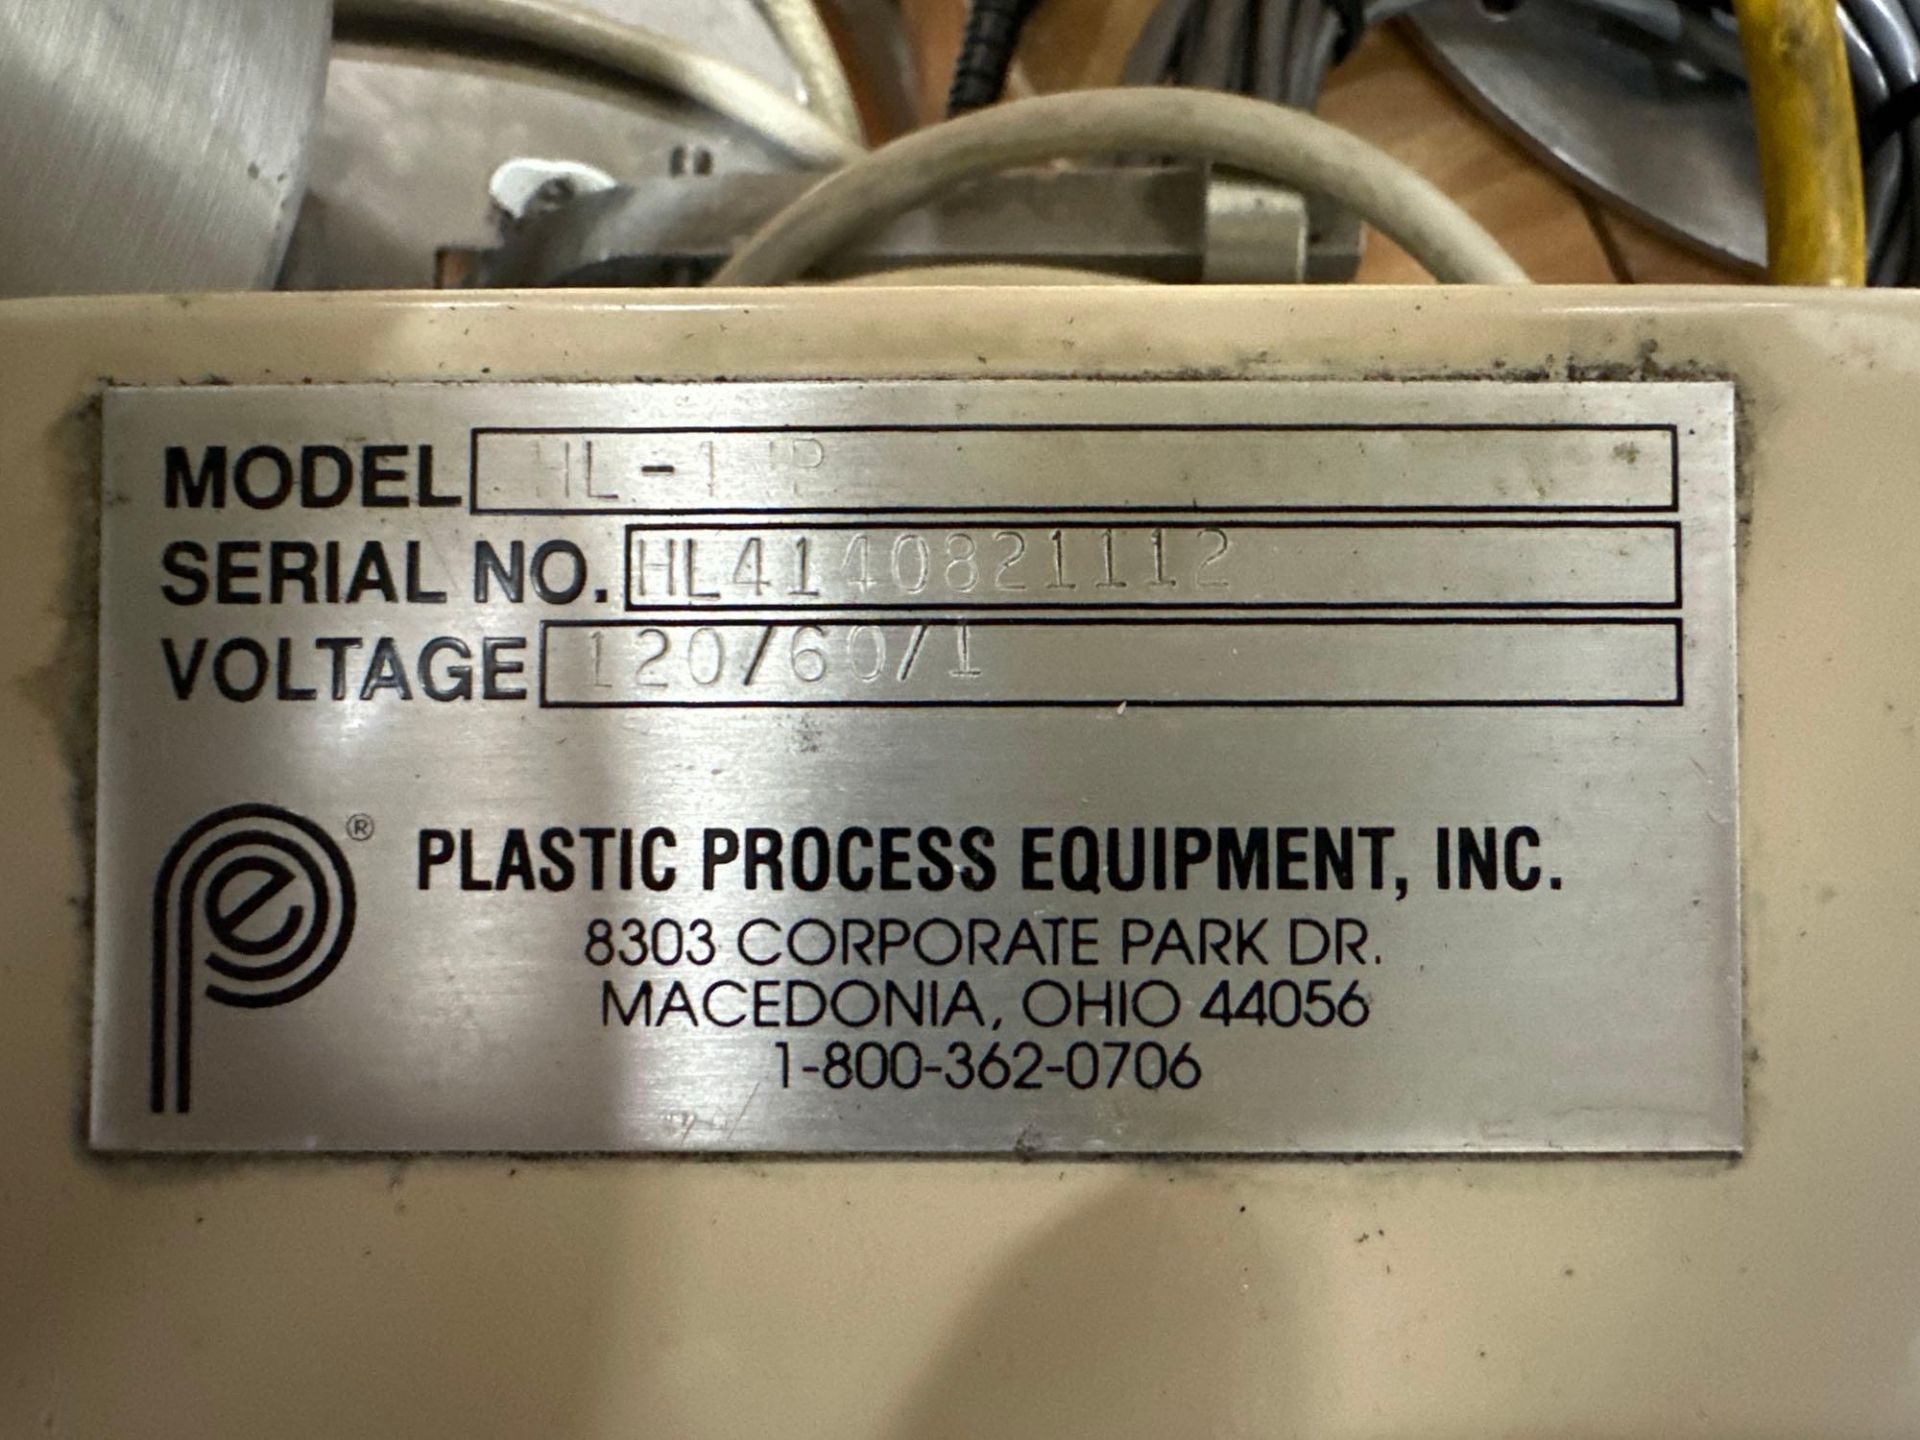 Plastic Process Equipment HL-1 Material Loader,Ê540 Lbs Per Hour, 110 Volt 8 Fla, Aluminum, App 4 Lb - Image 4 of 4